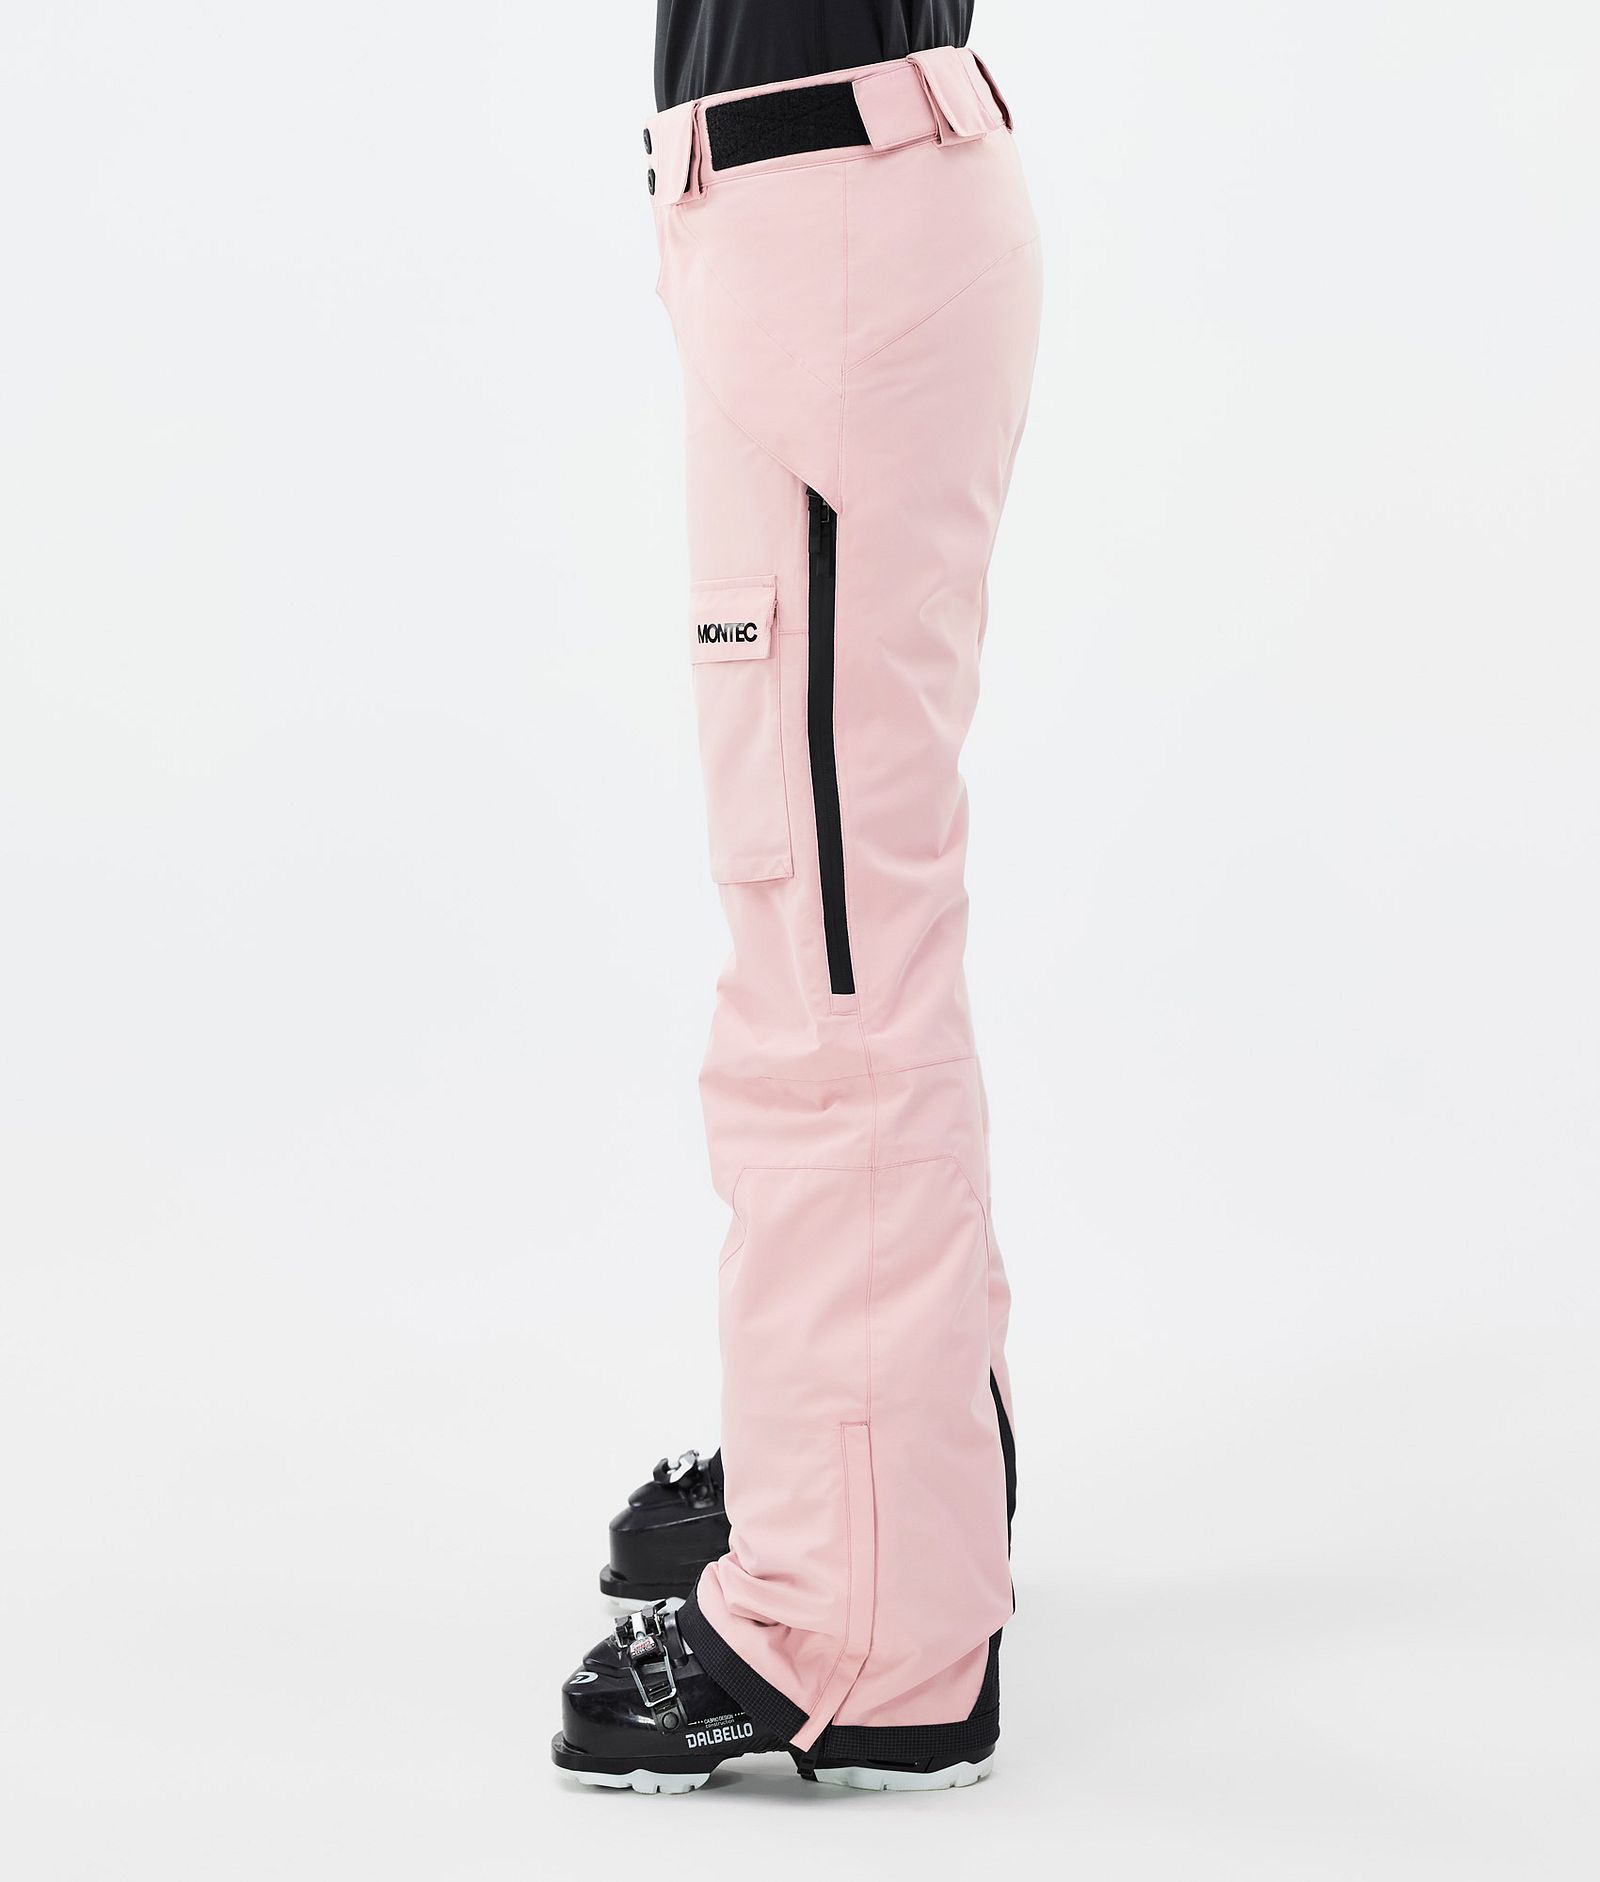 Kirin W Pantalon de Ski Femme Soft Pink, Image 3 sur 6